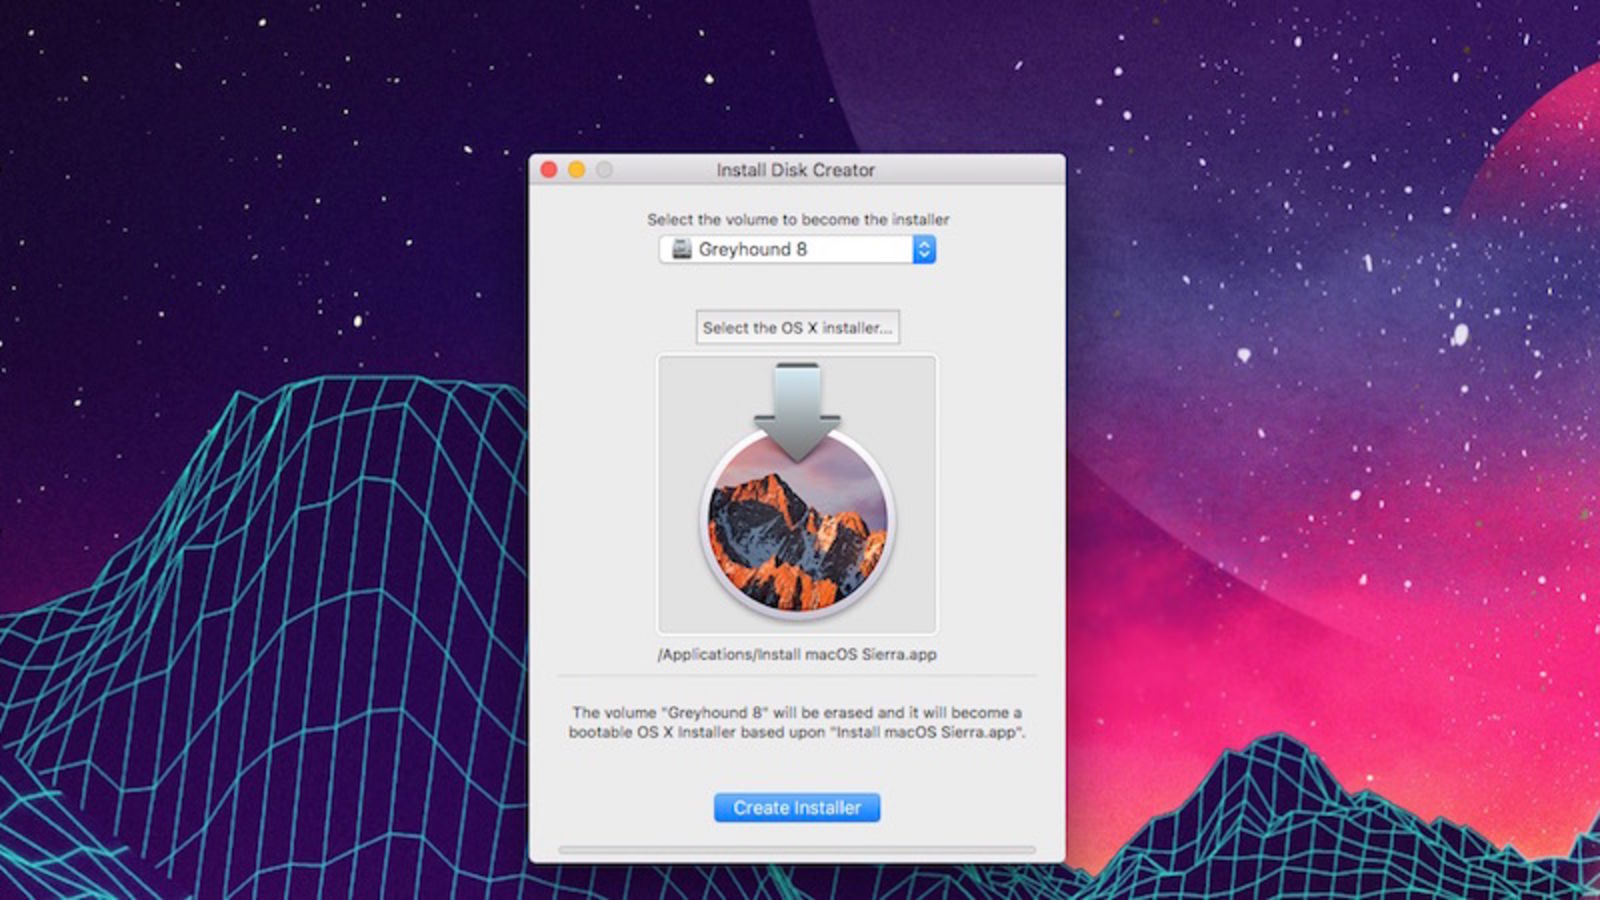 Download mac os sierra on usb through windows